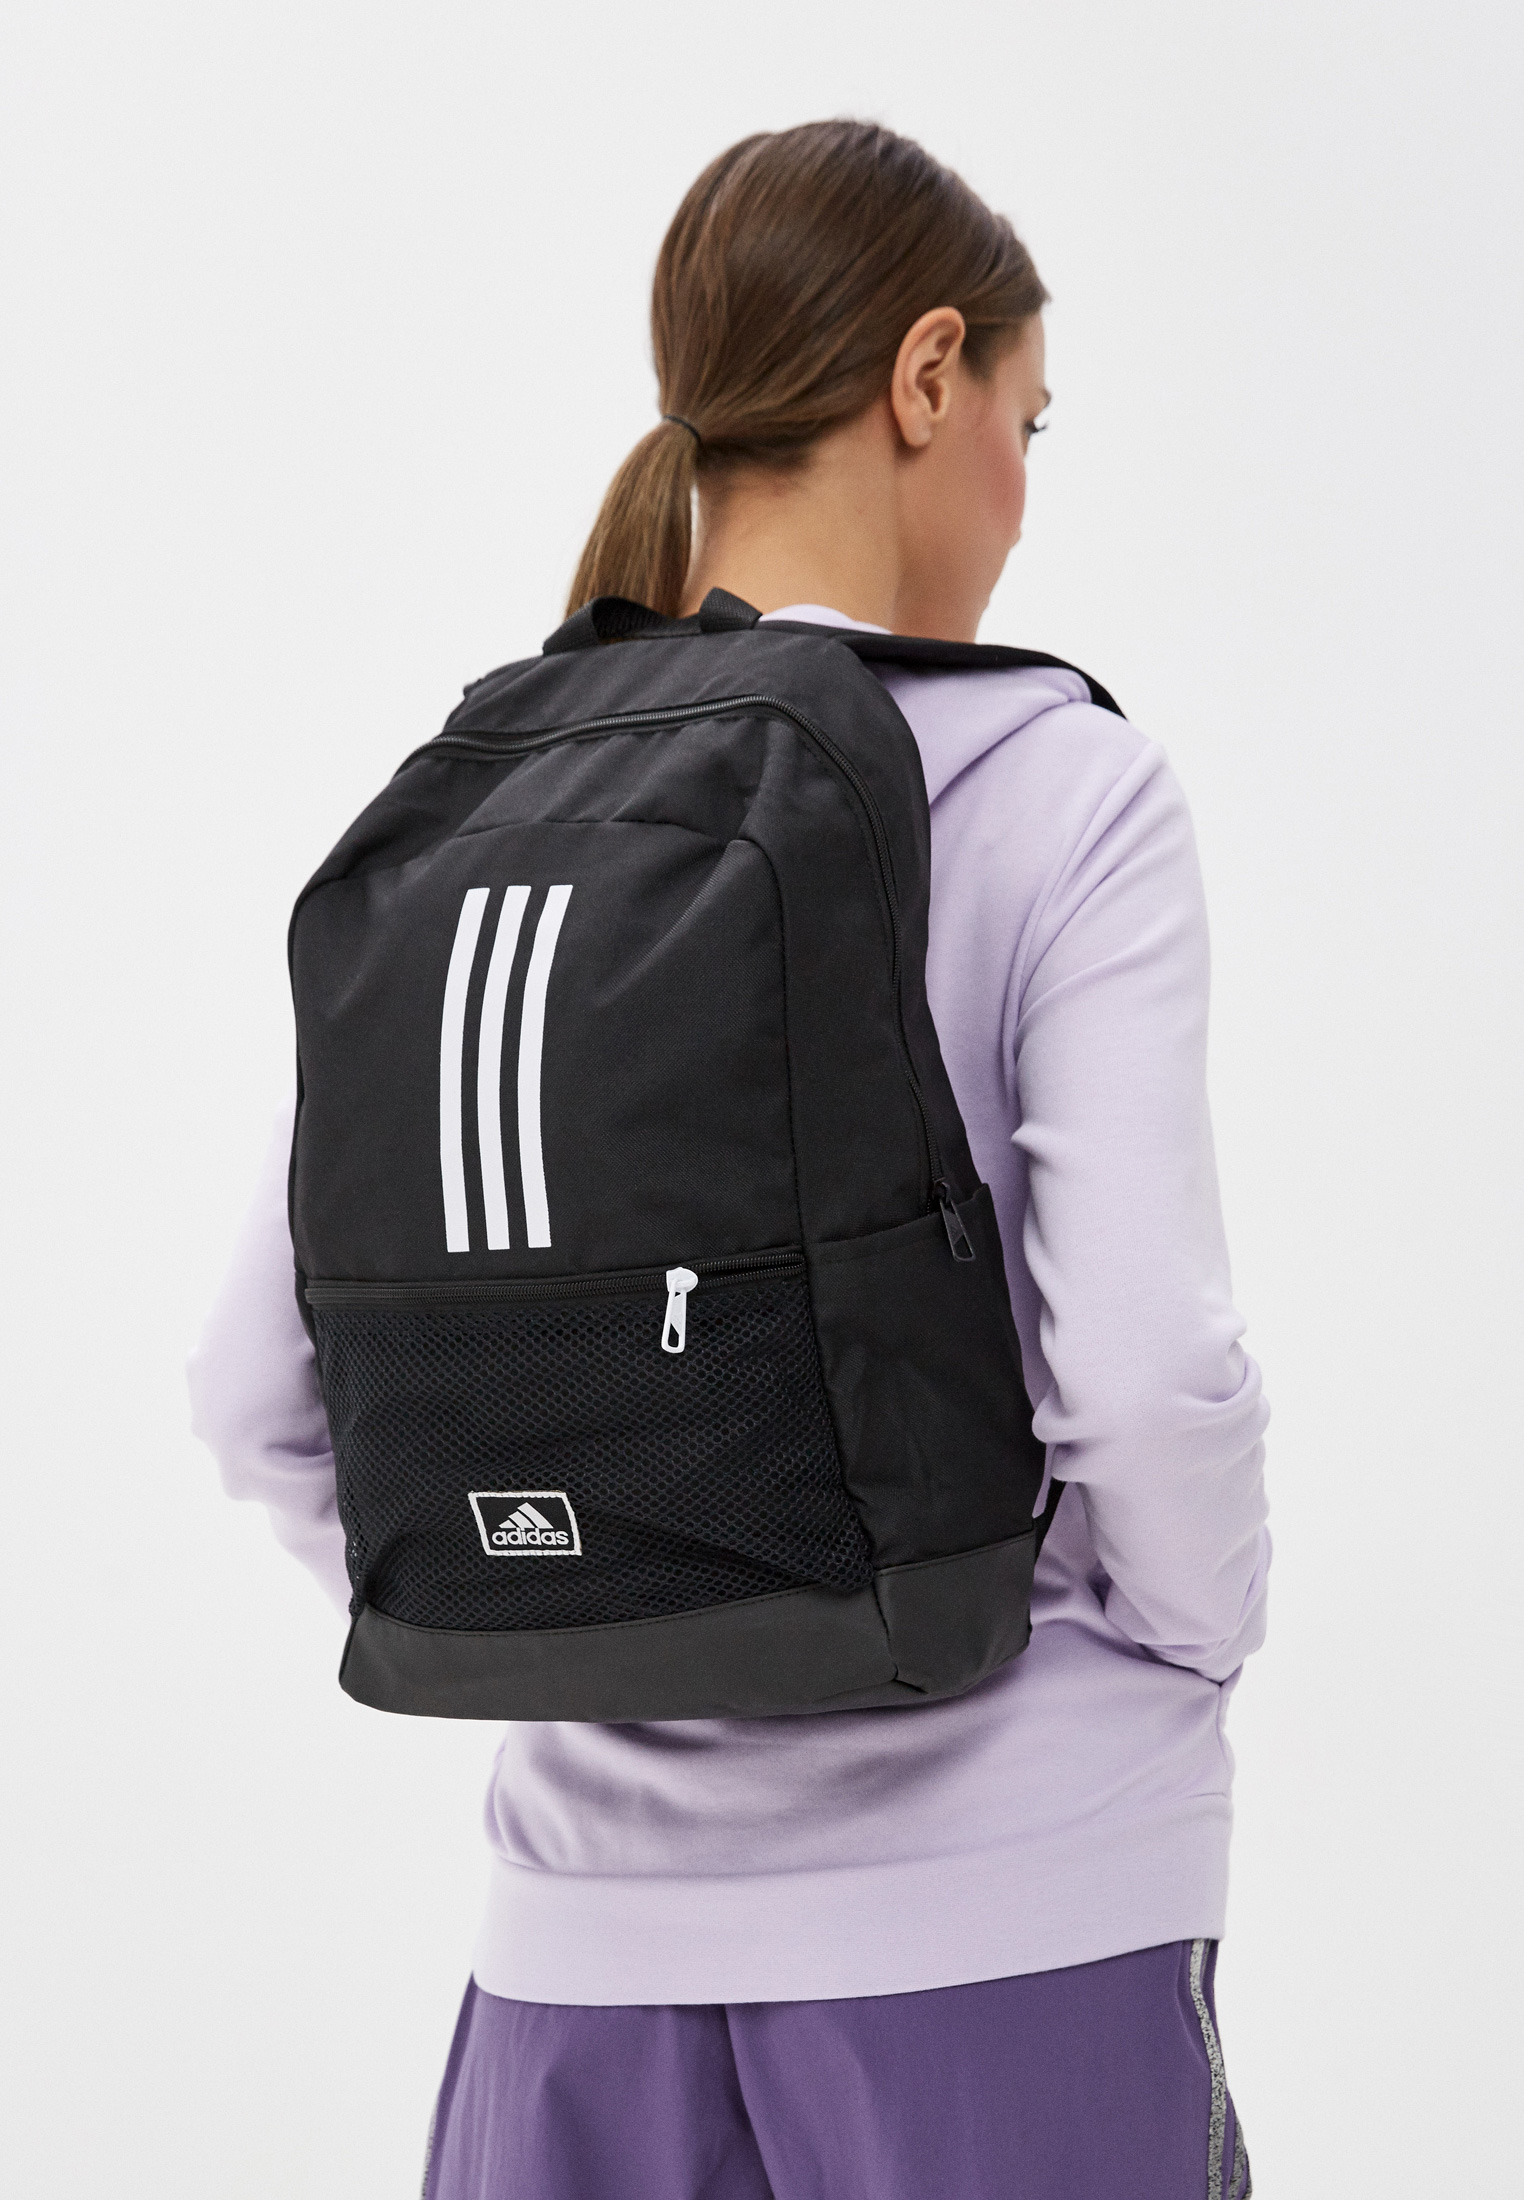 Рюкзак adidas CLAS BP 3S, цвет: черный, AD002BUHLBM5 — купить в  интернет-магазине Lamoda